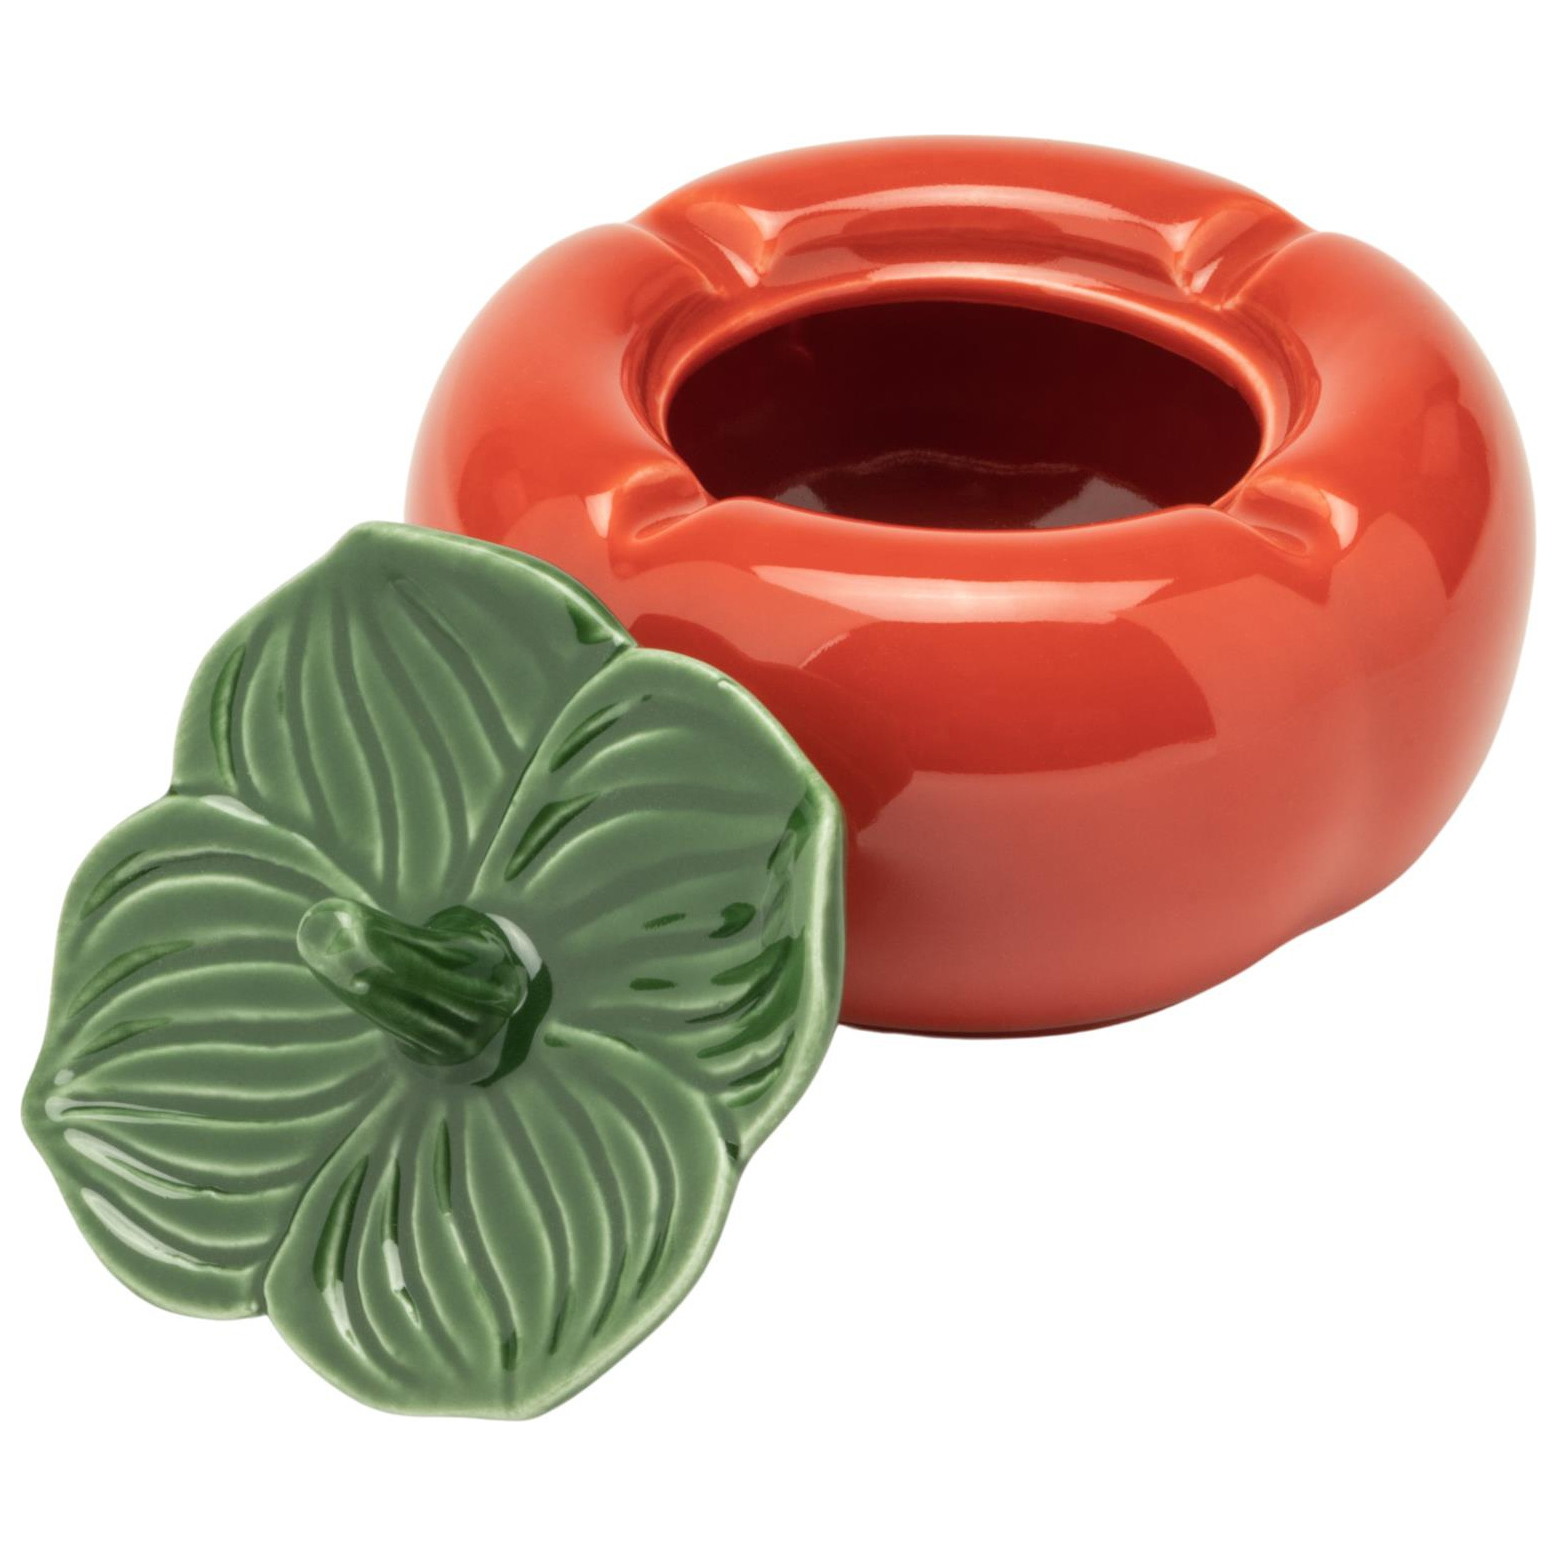 Windascher Keramik Tomate mit Deckel 4 Ablagen Ø 10,5 cm 